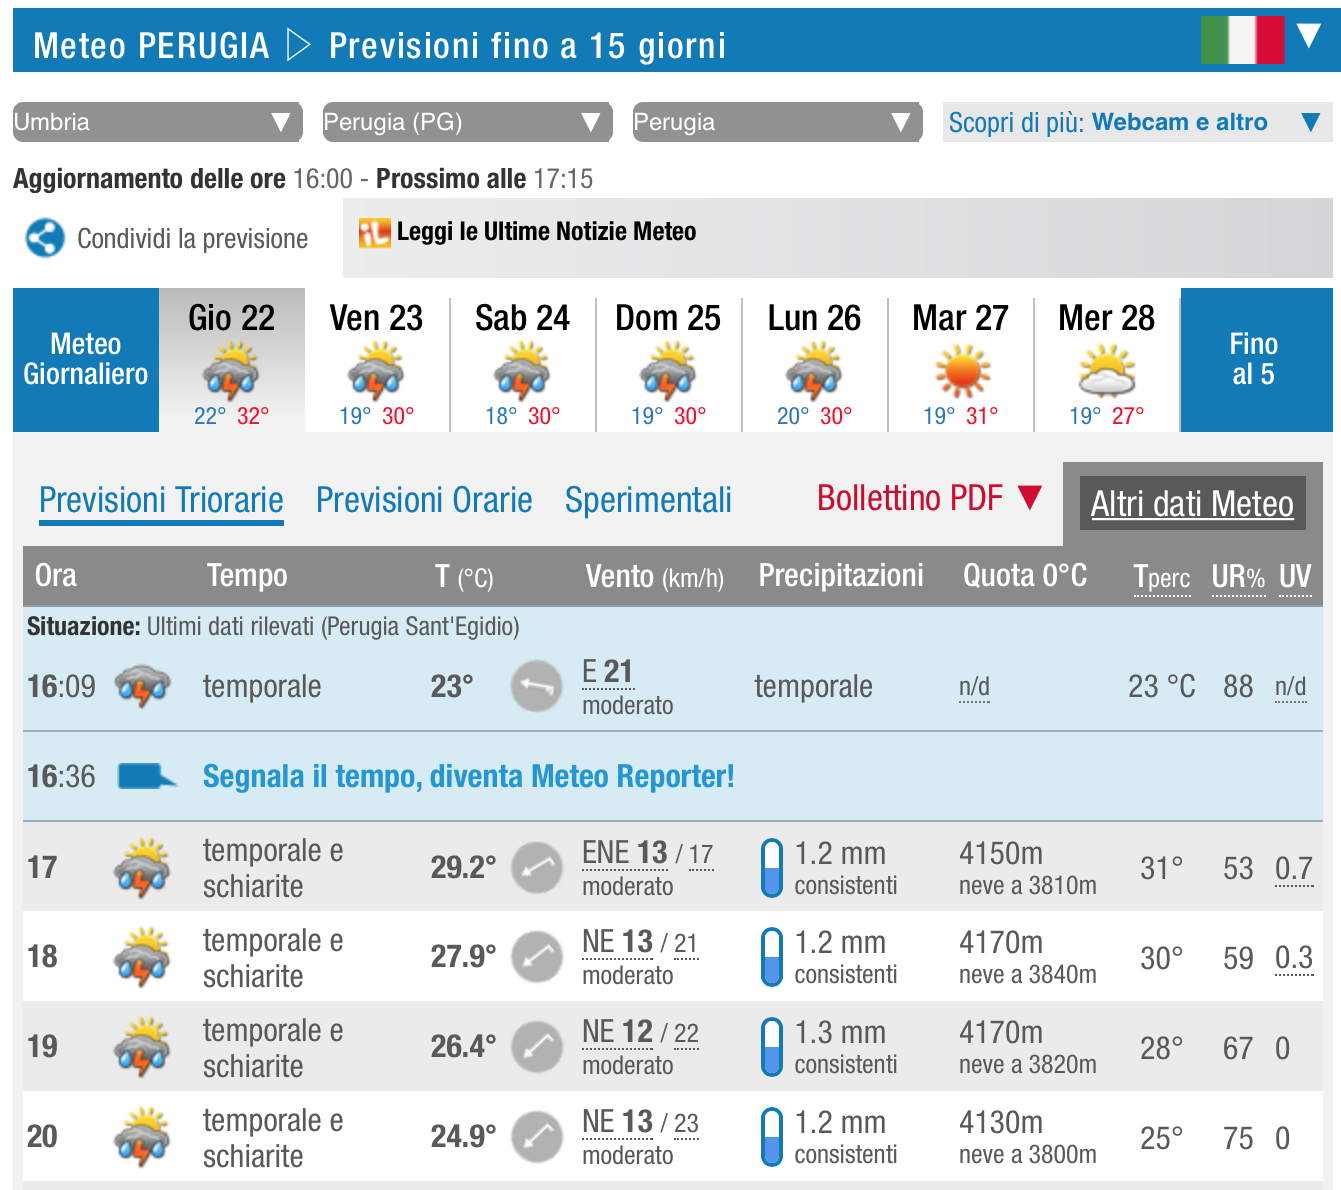 窓閉めよう家も車も雷鳴れば、雷雨到来 イタリア中部_f0234936_552512.png